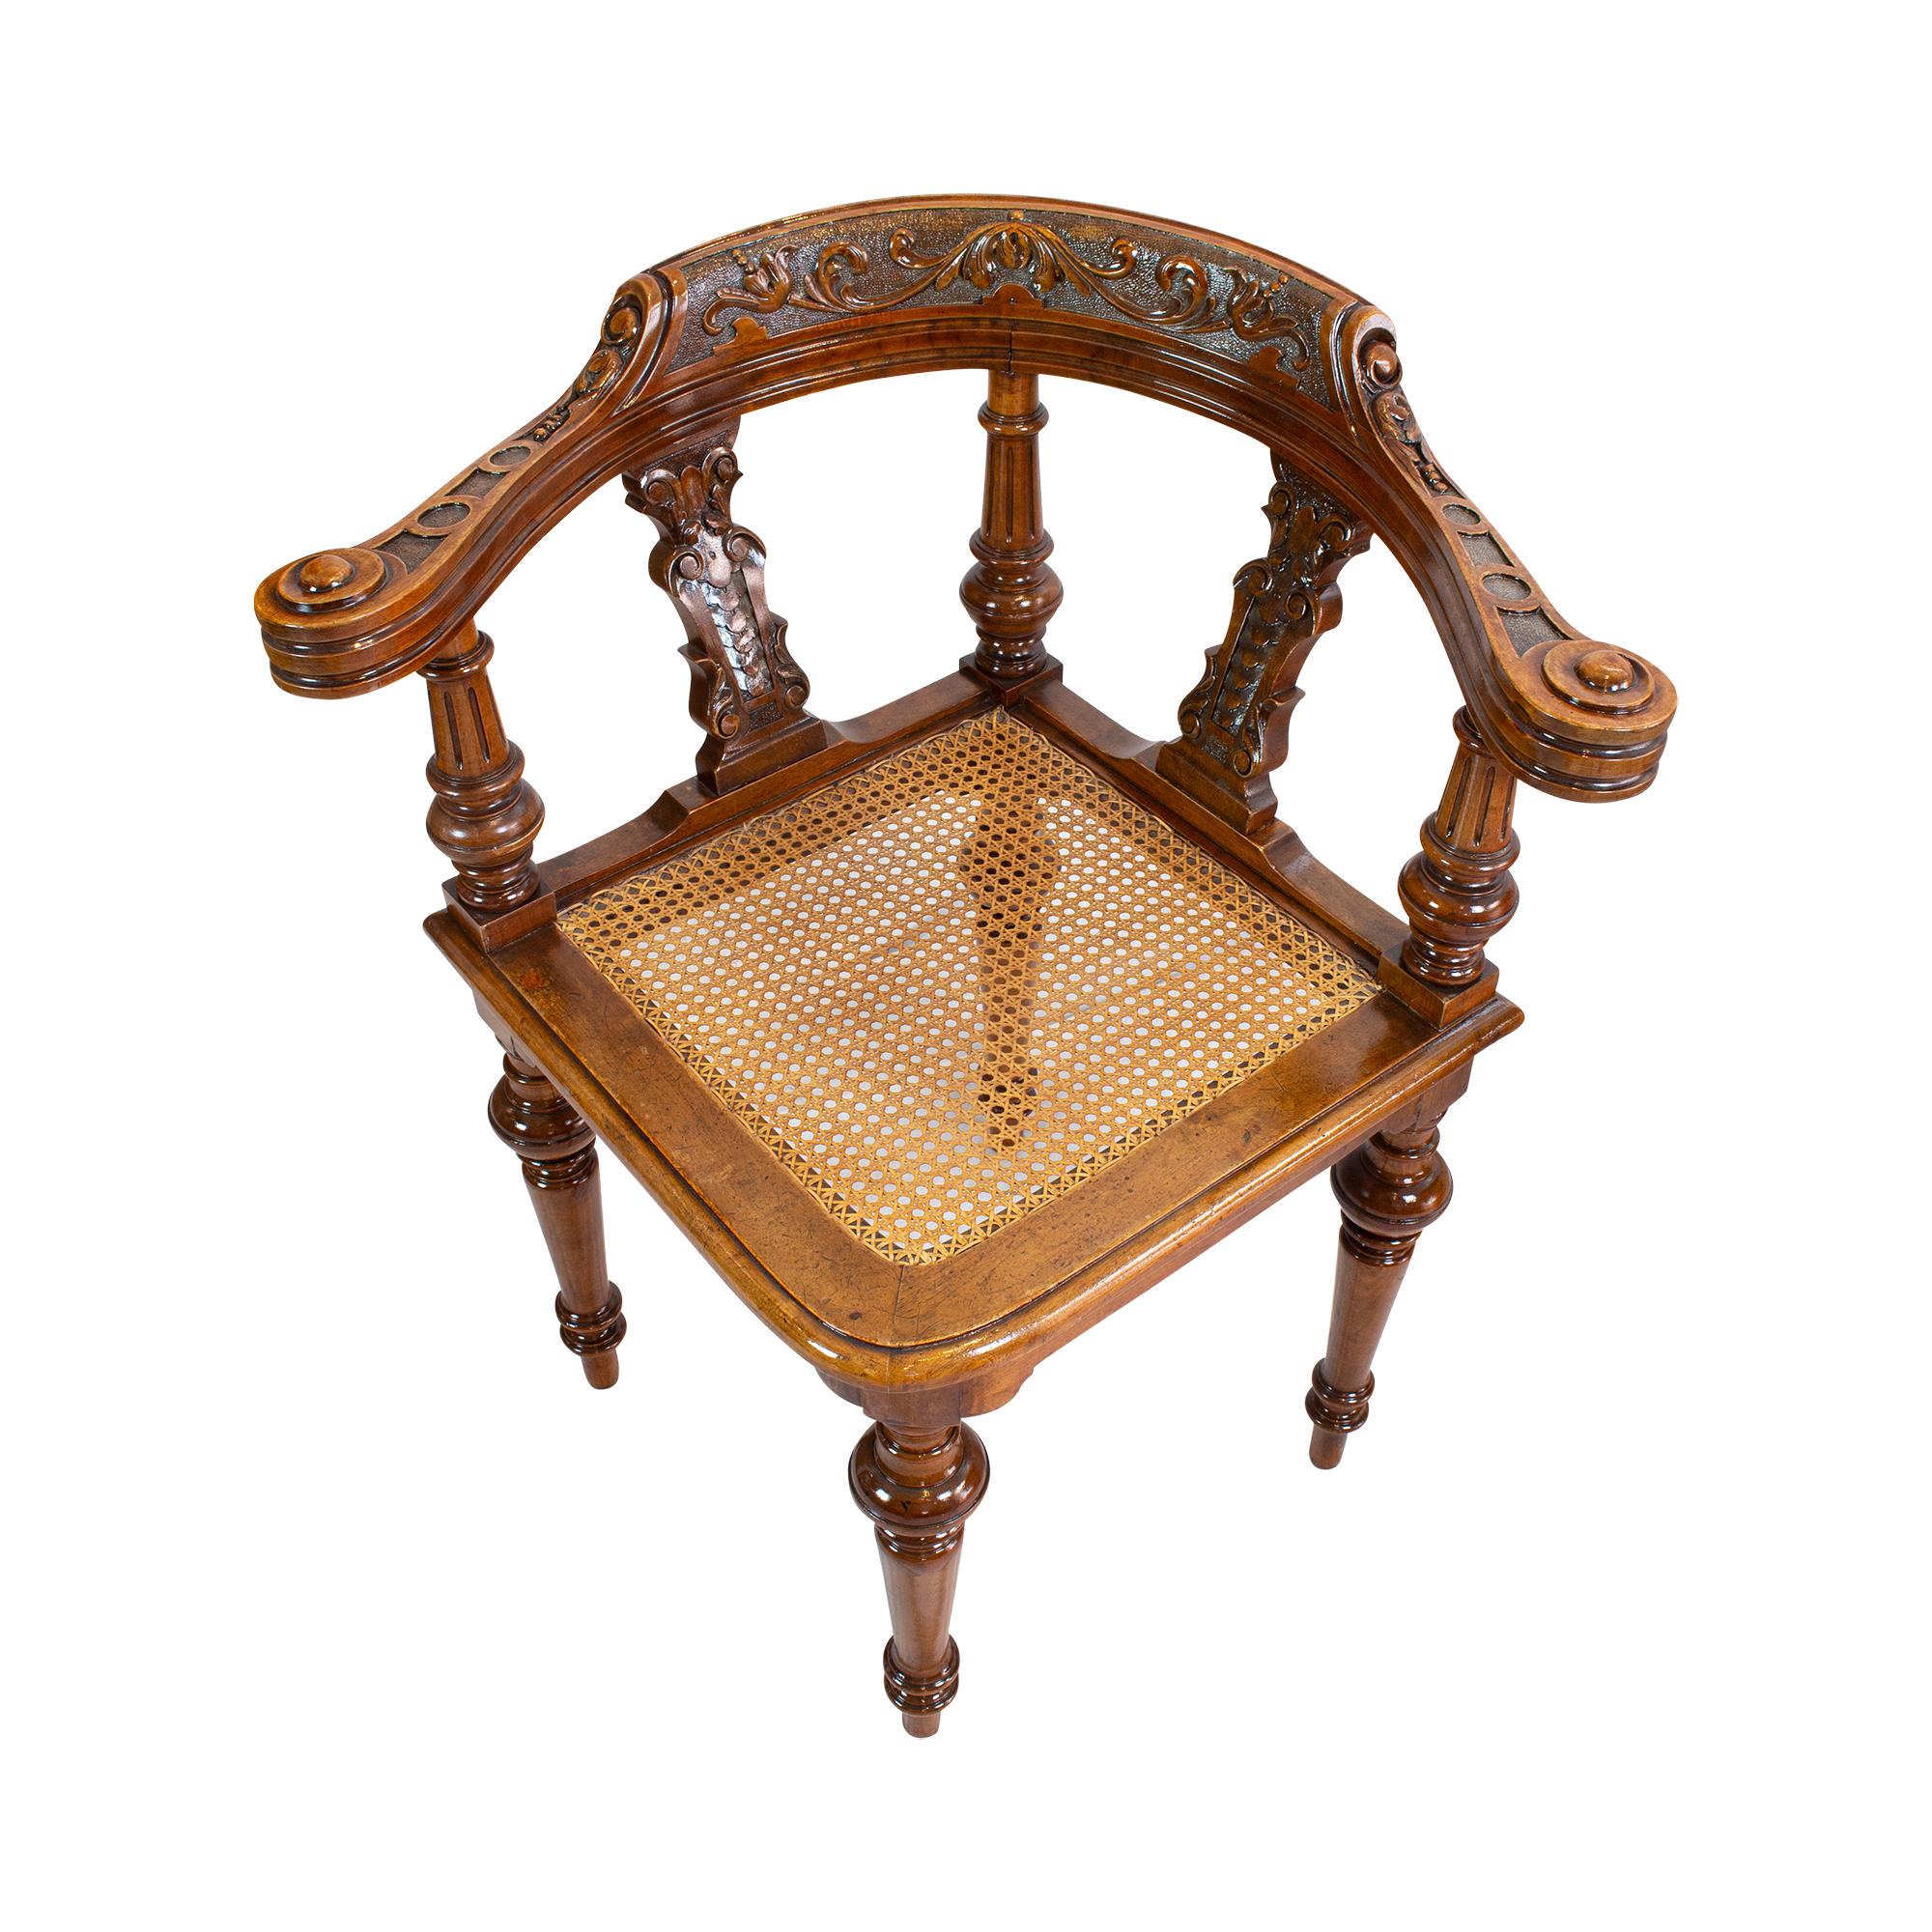 Sehr schöner seltener Eckstuhl, auf dem man bequem sitzen kann. Der Eckstuhl stammt aus der Zeit um 1870 in Deutschland, aus der Wilhelminischen Zeit. Der Stuhl wurde aus massivem Nussbaumholz gefertigt. Der Sitz ist mit einem so genannten Wiener